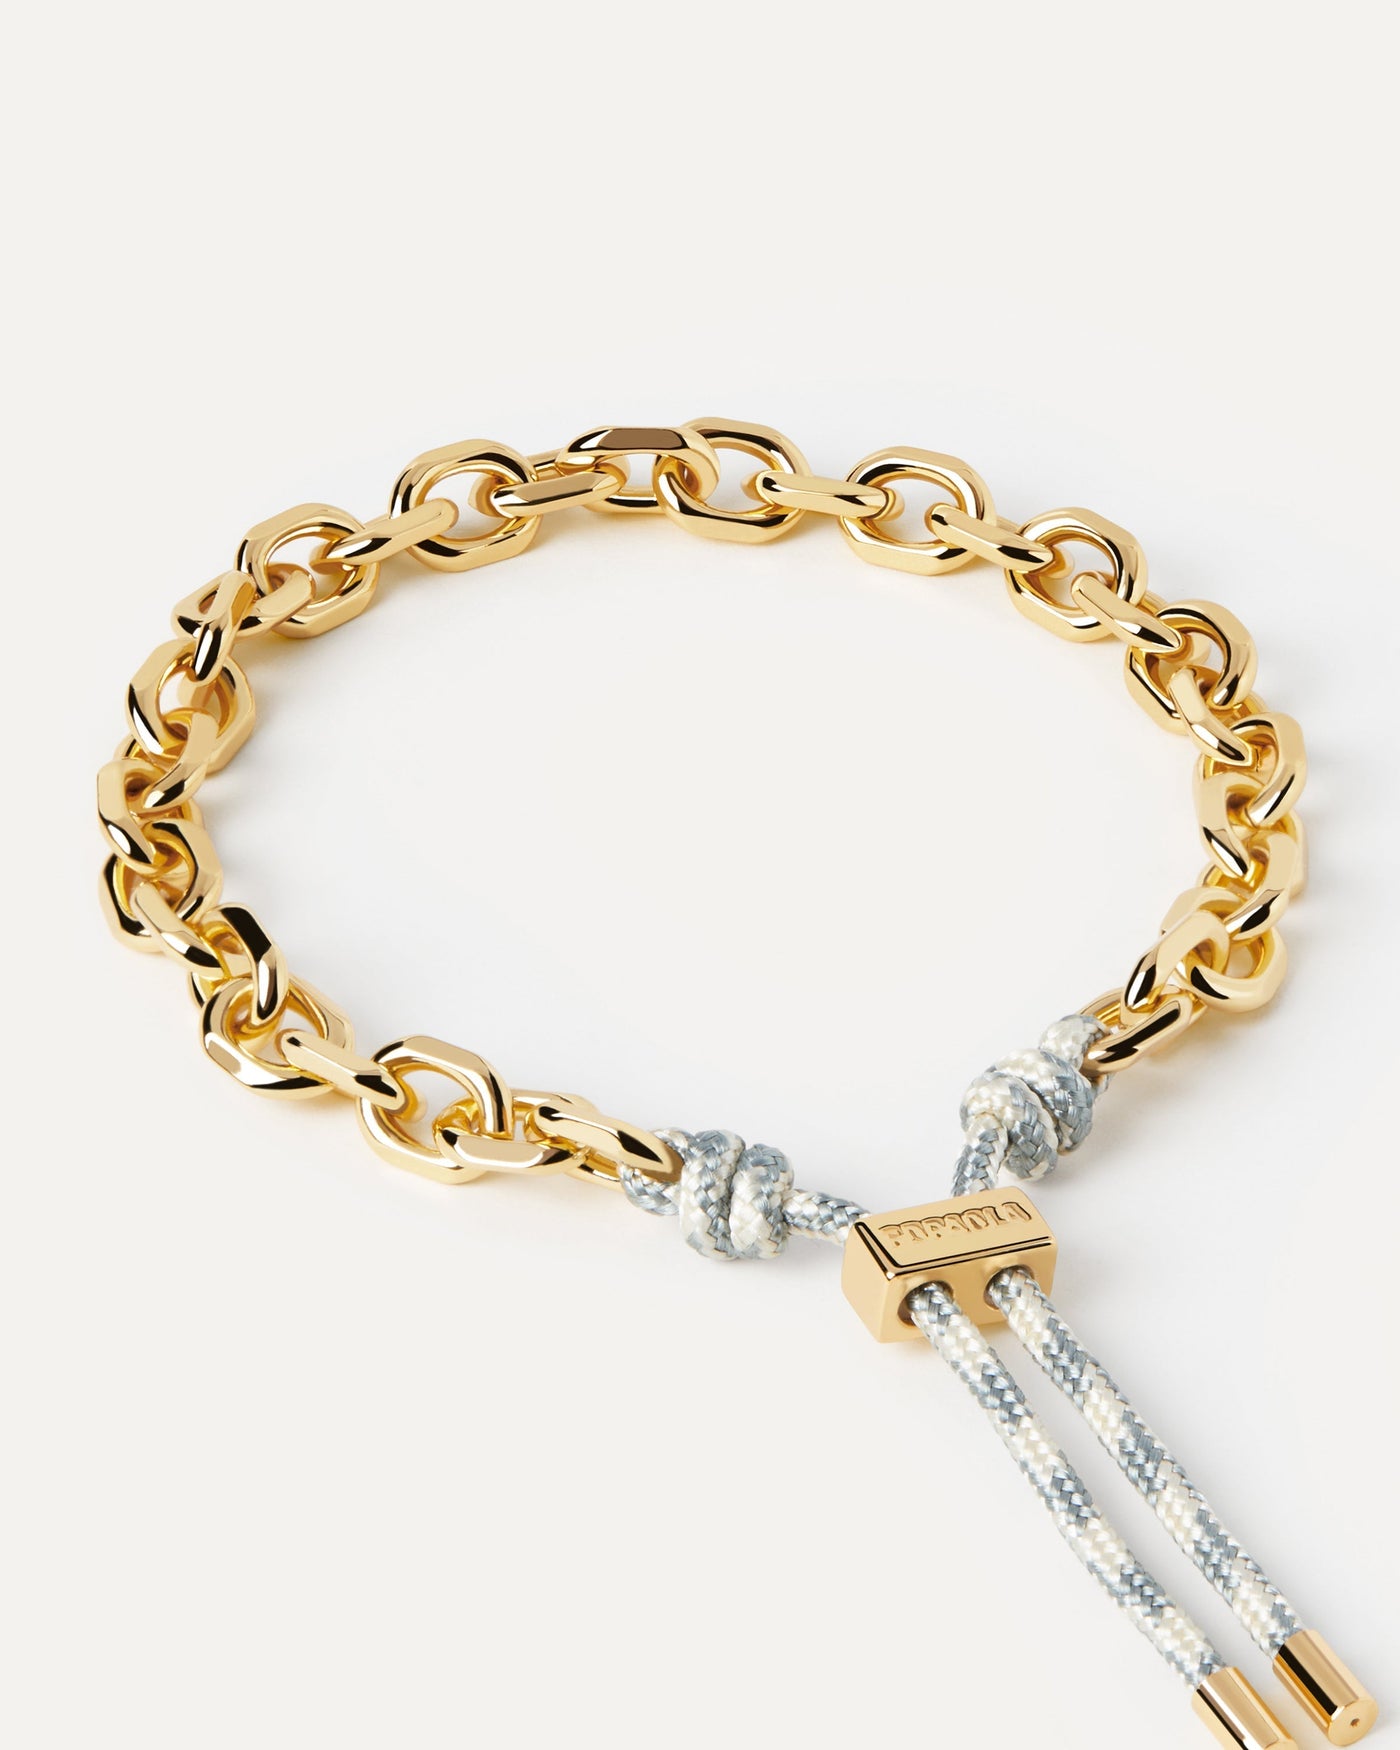 Sélection 2023 | Bracelet Cordon et Chaîne Sky Essential. Bracelet chaîne dorée avec corde bleu et blanc et fermoir coulissant ajustable. Découvrez les dernières nouveautés de chez PDPAOLA. Commandez et recevez votre bijou en toute sérénité. Livraison gratuite.